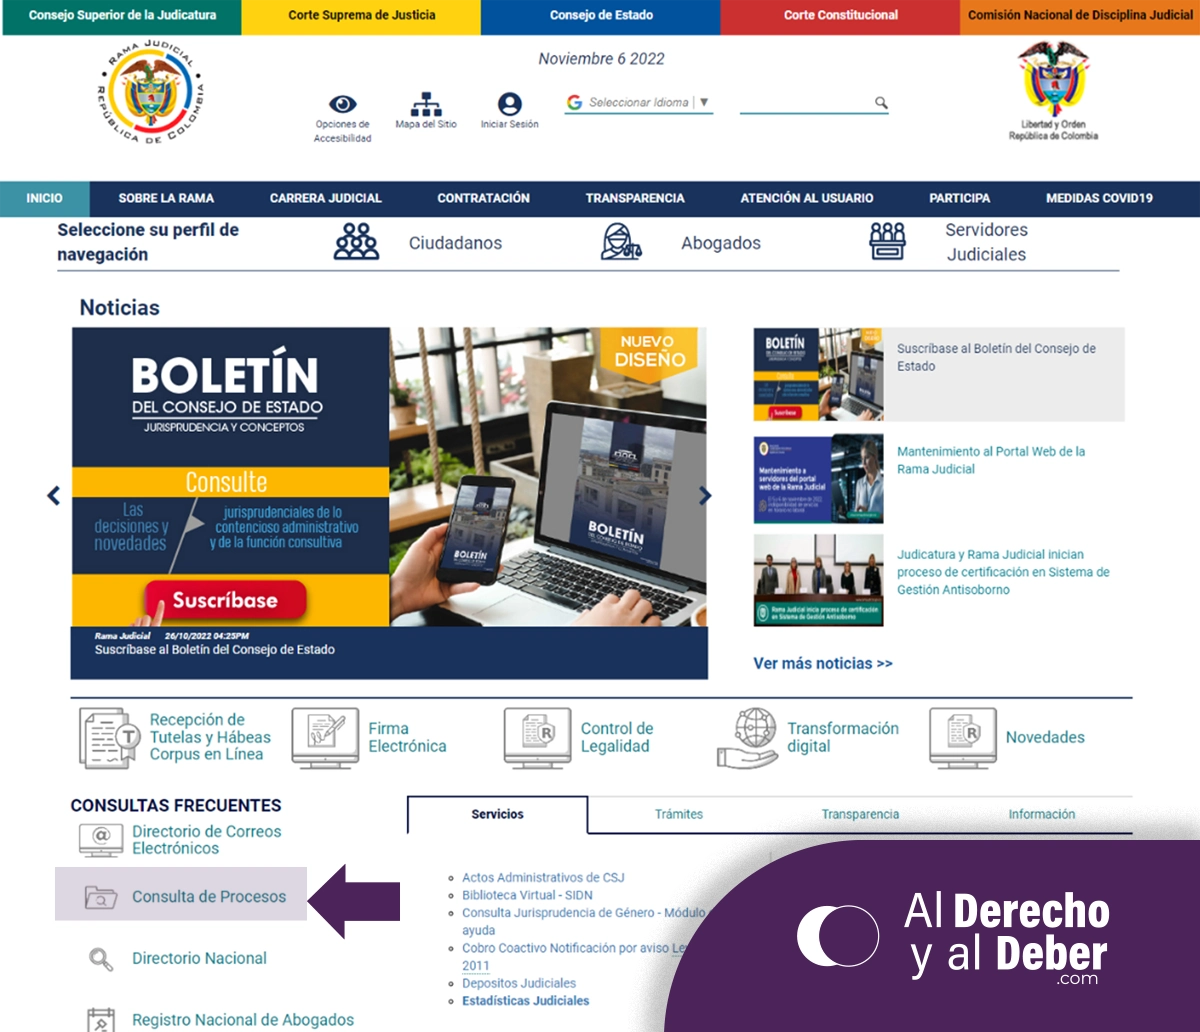 Cómo consultar las actuaciones dentro de un Proceso Judicial en Colombia pagina de inicio ubicación de consulta de procesos